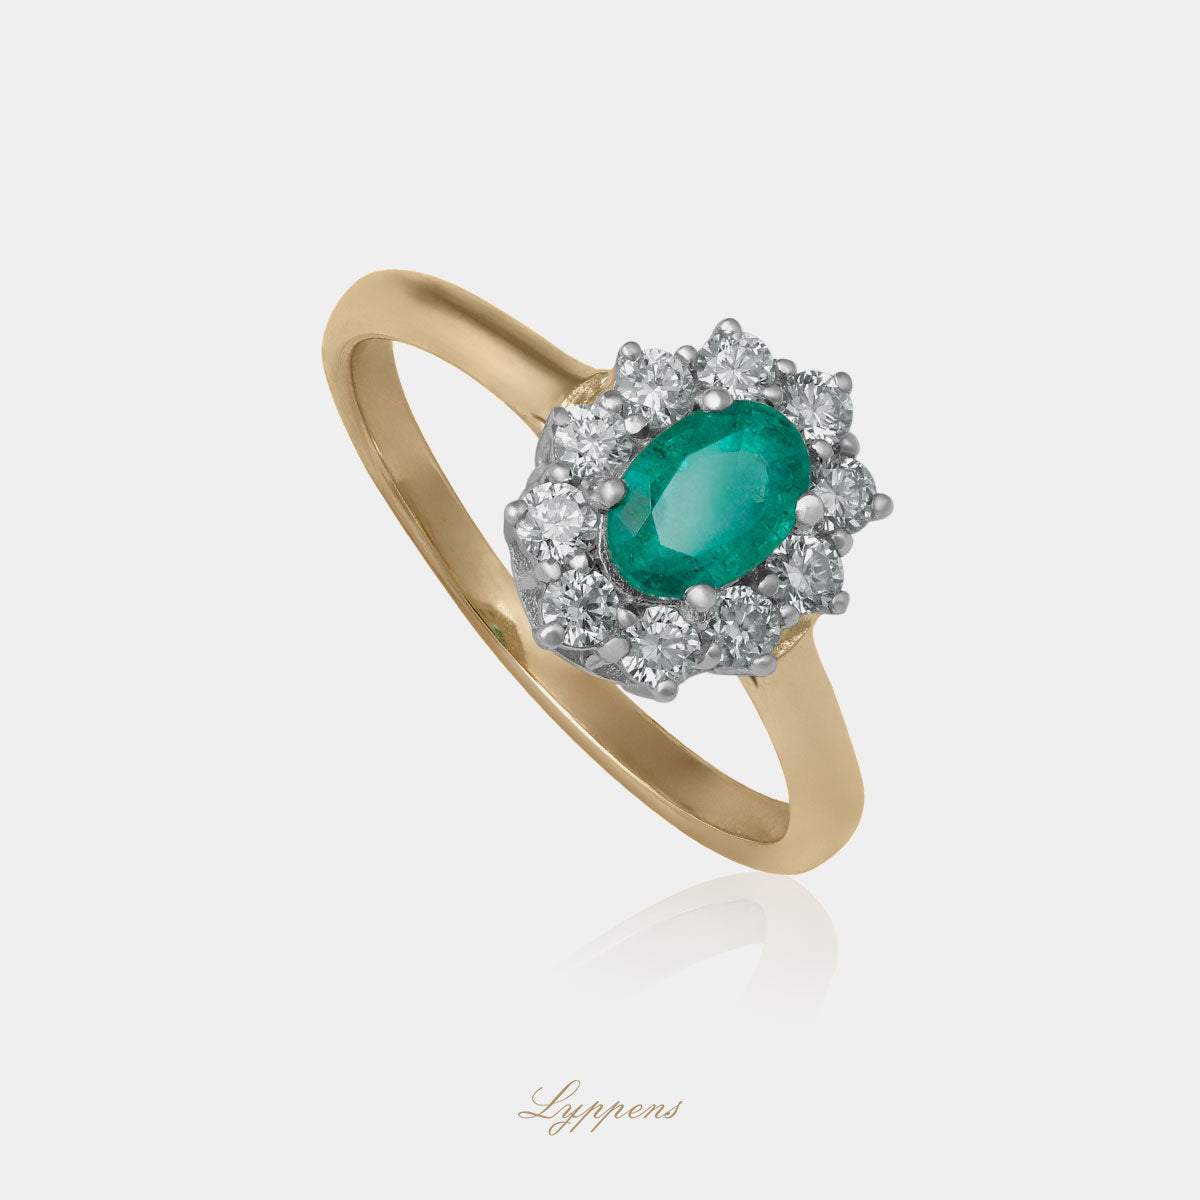 Geel- met witgouden entourage ring in het midden gezet met een ovaal geslepen smaragd en in een entourage van briljant geslepen diamant.